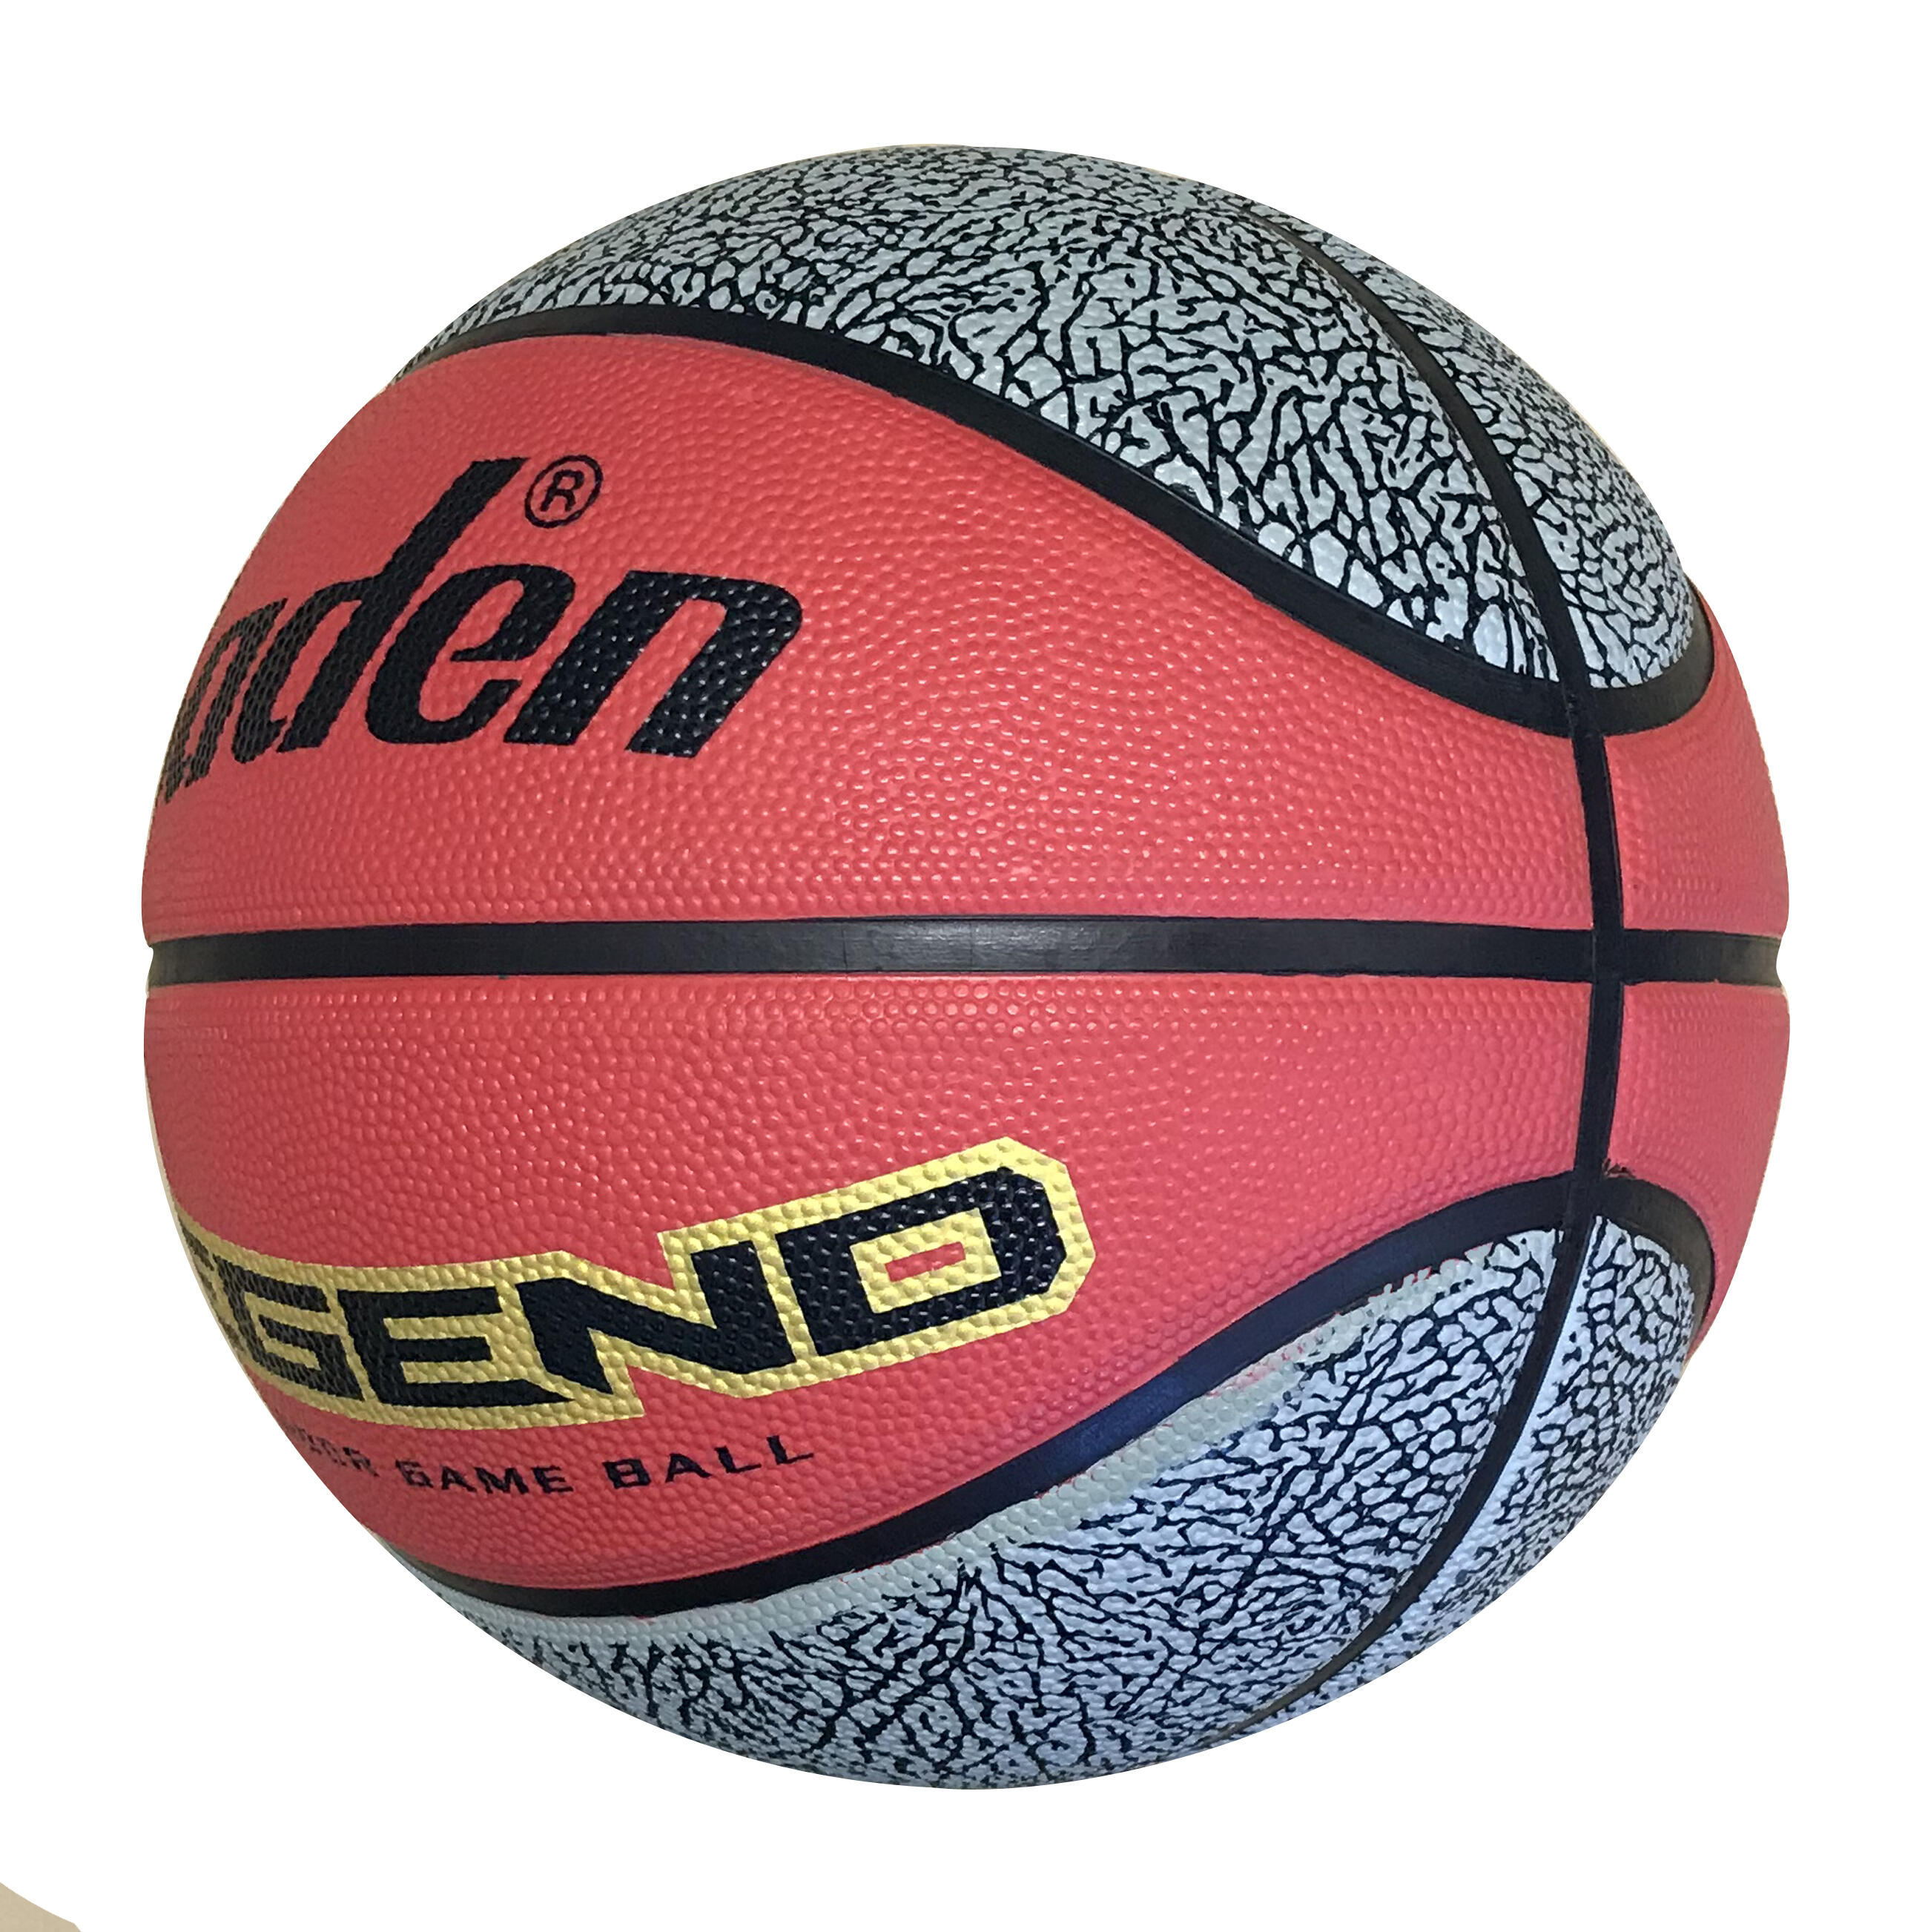 Baden Legend Size 7 Basketball - Red / Black 3/5